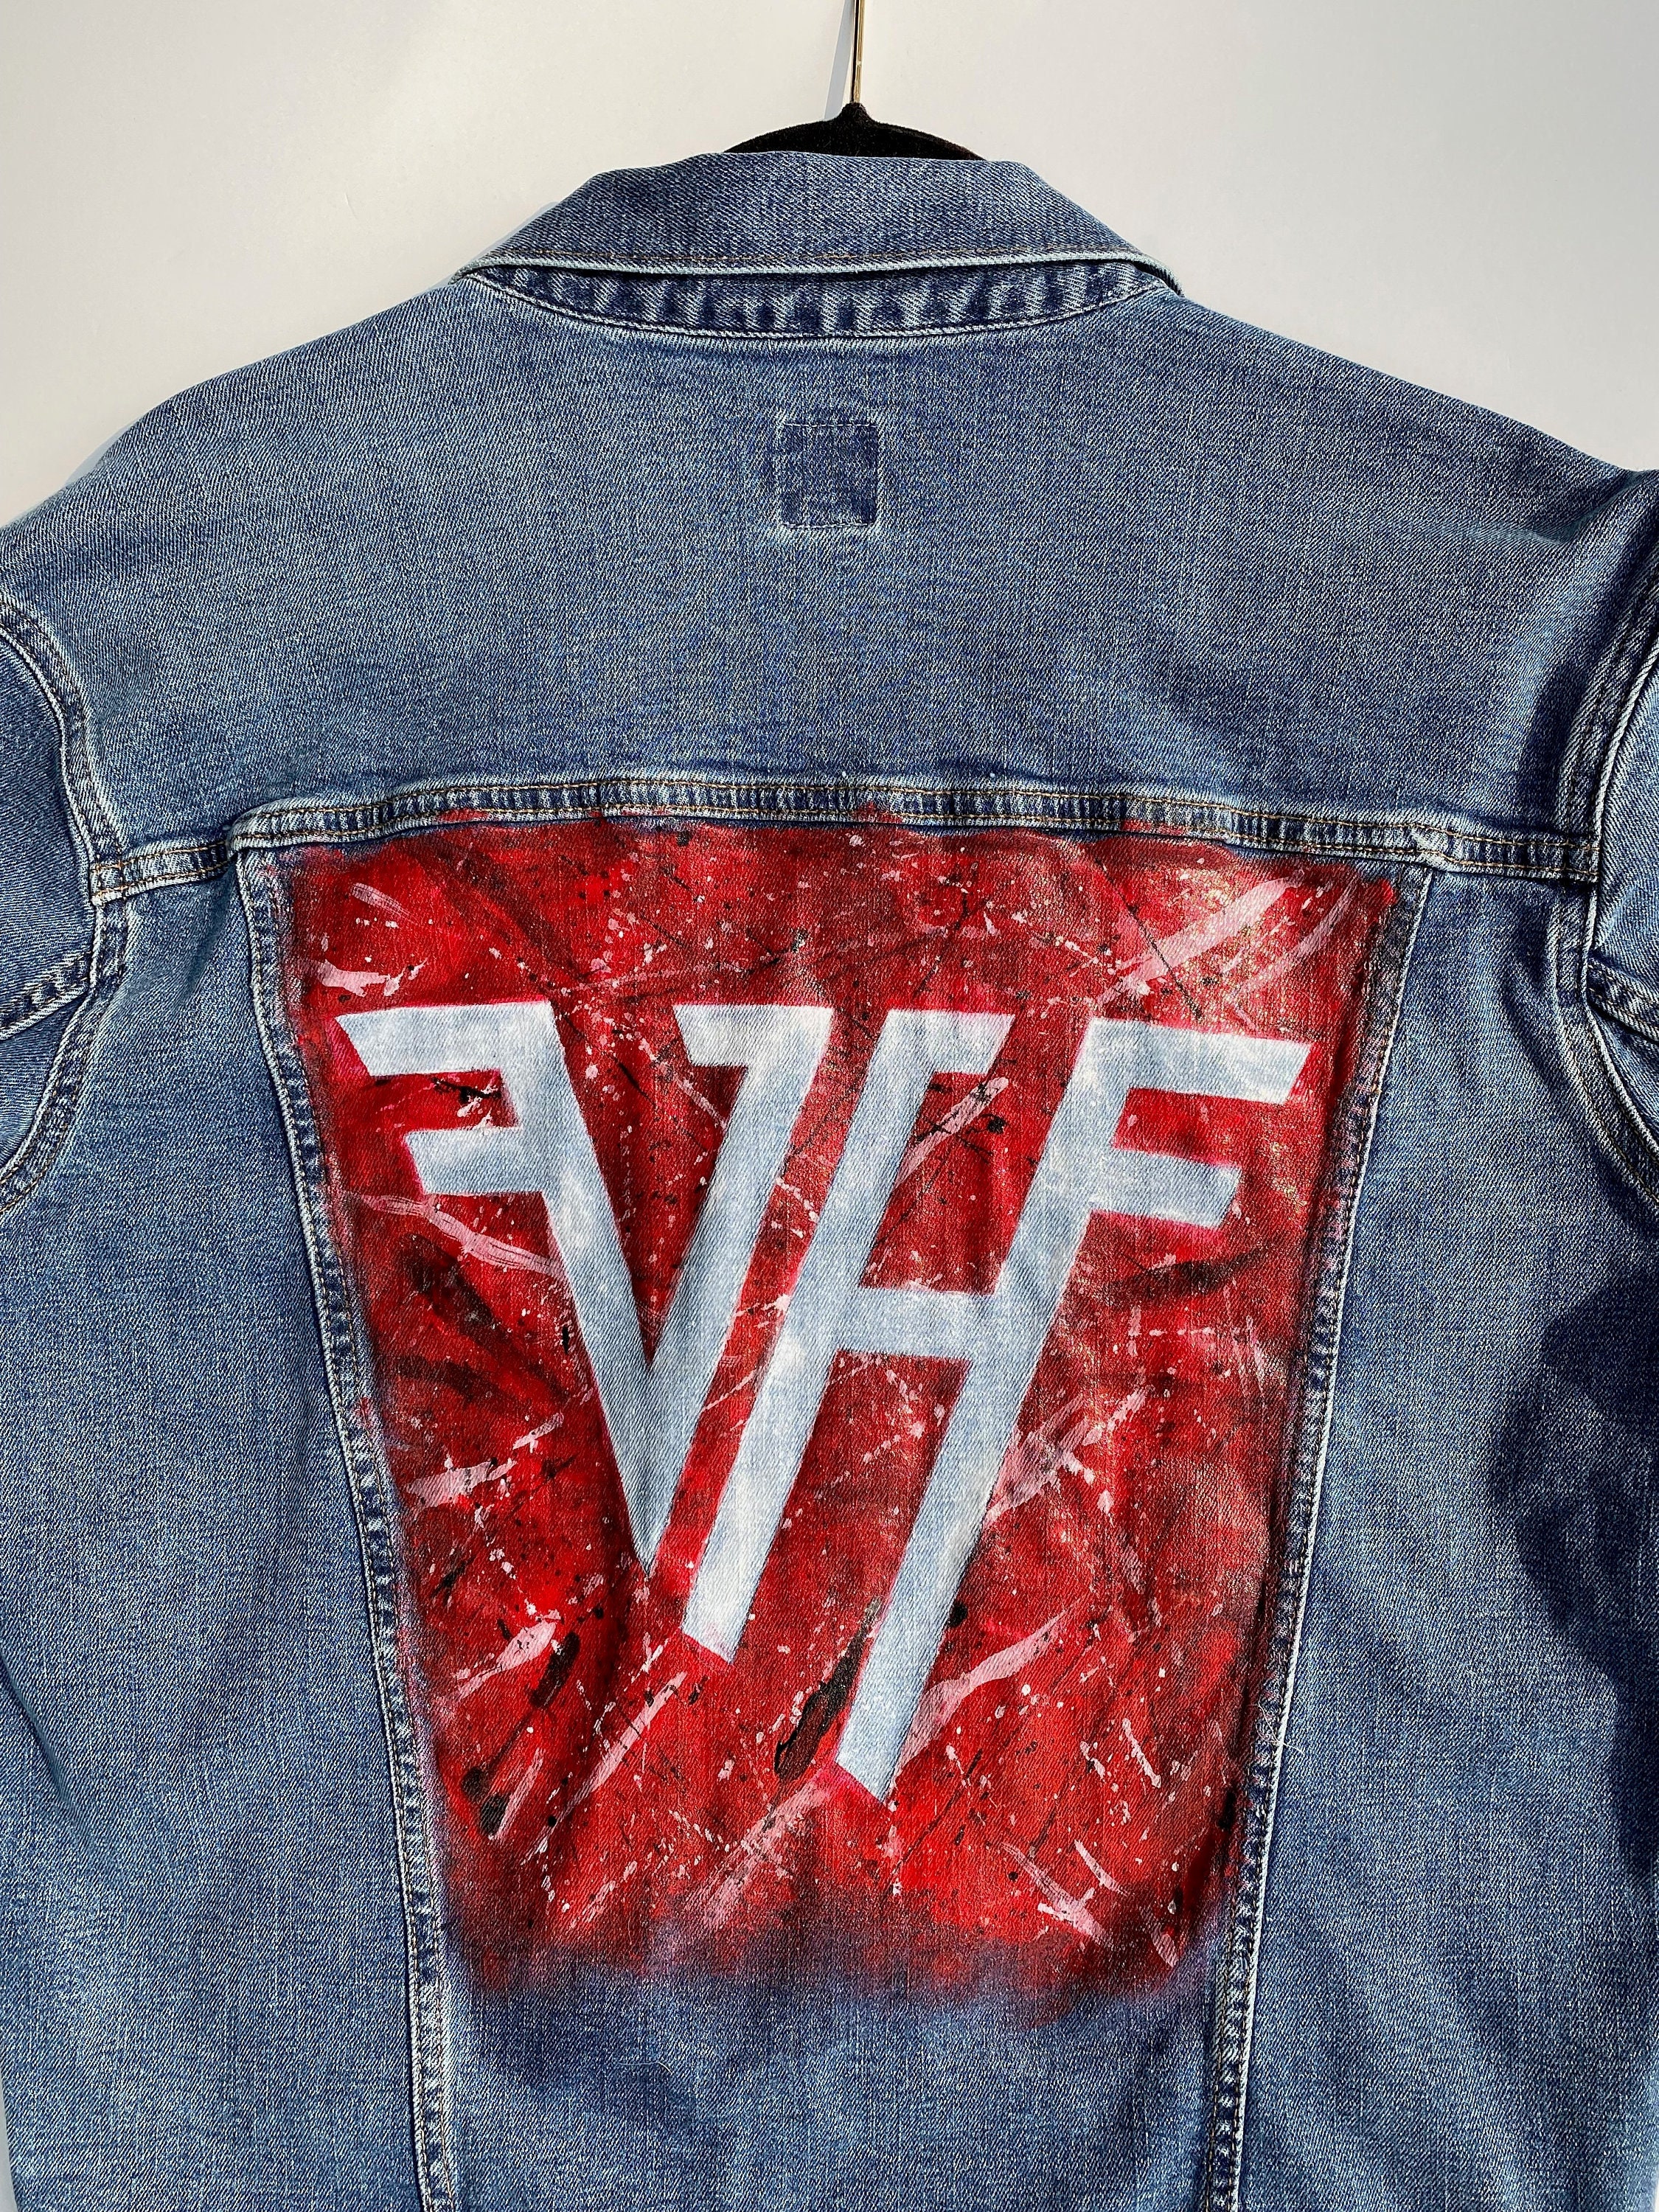 Van Halen Monsters of Rock Denim Jacket